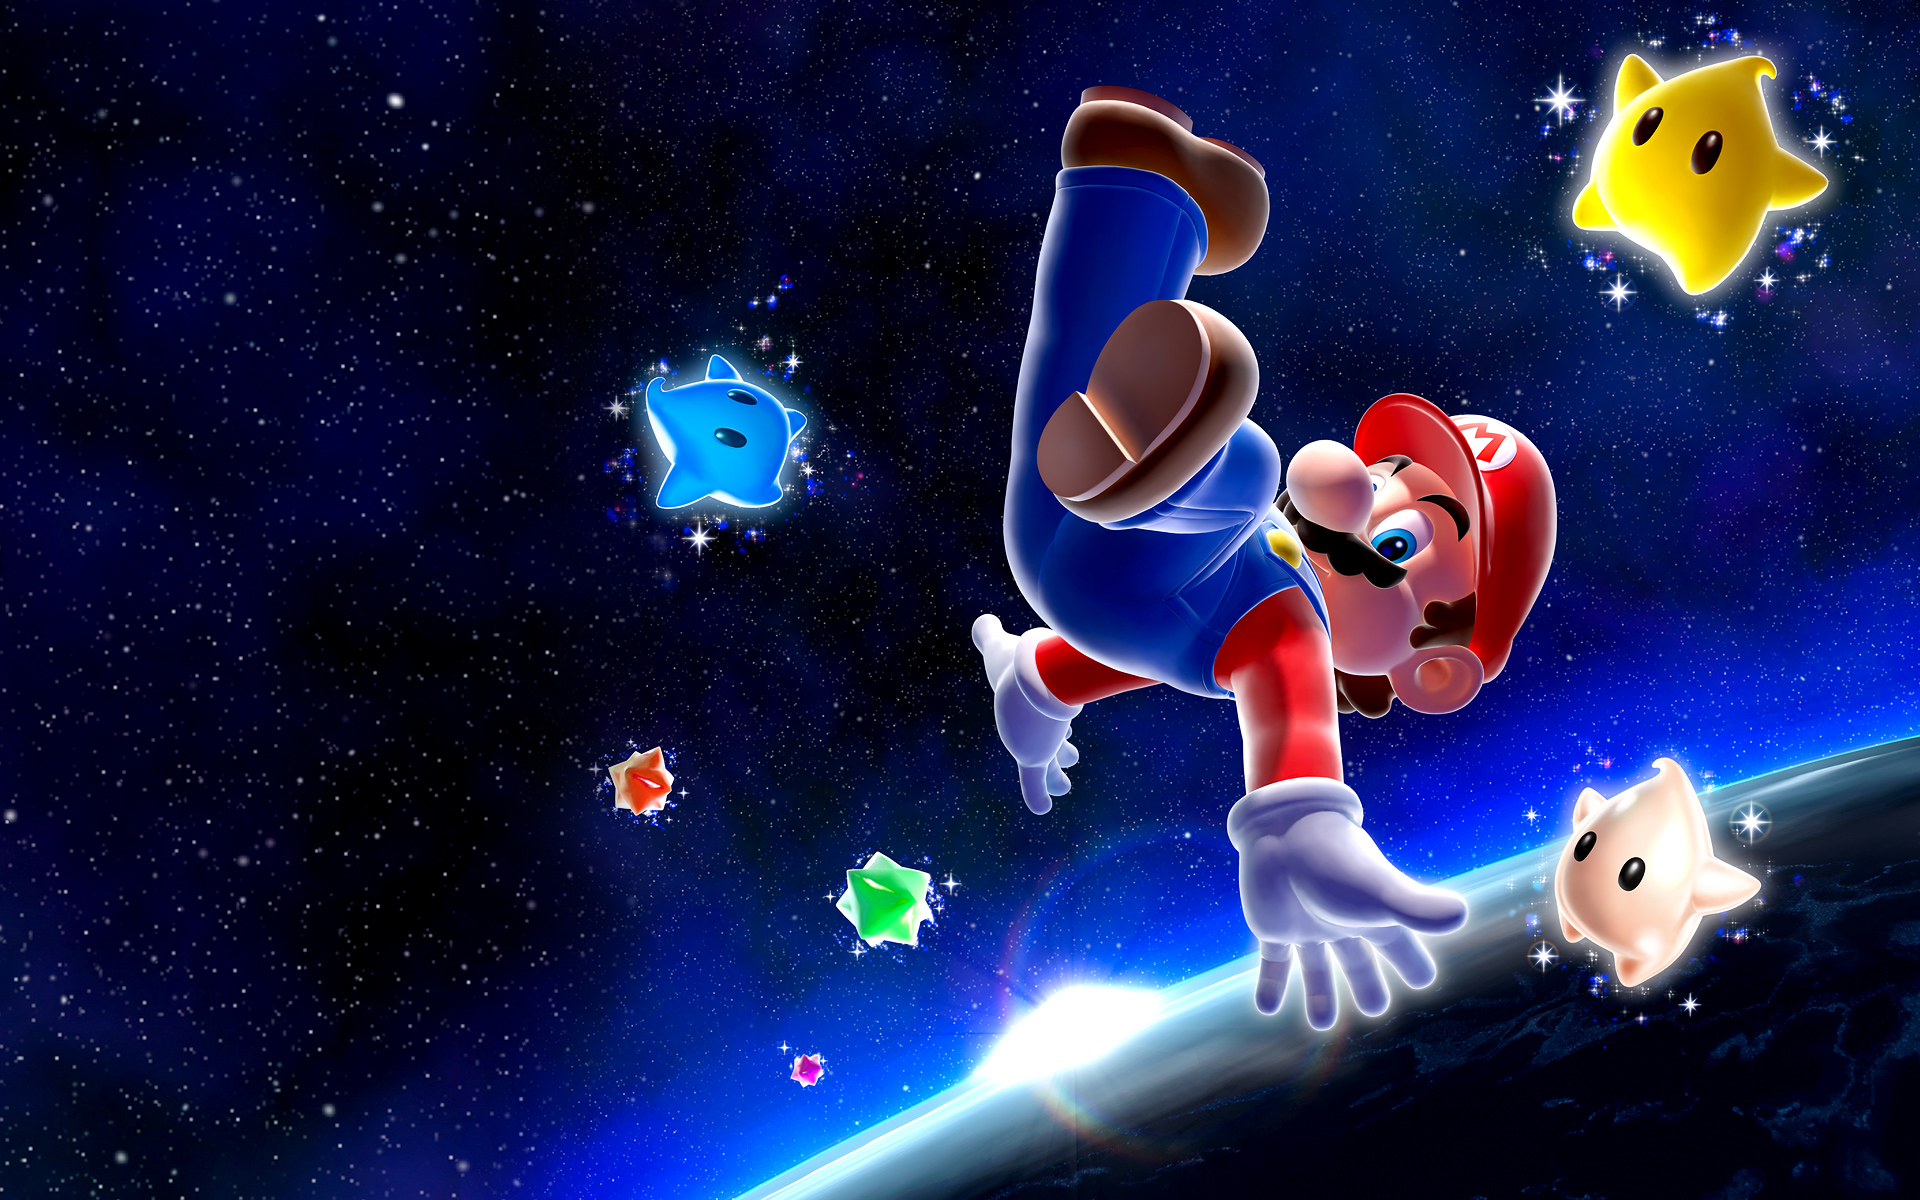 Hình nền siêu nét Super Mario Galaxy từ Pure Nintendo sẽ khiến bạn vô cùng ấn tượng với độ sắc nét tuyệt đỉnh. Hãy cùng bước vào trong thế giới đầy màu sắc và phiêu lưu cùng Mario đến những vùng đất chưa từng được khám phá qua những hình ảnh này!